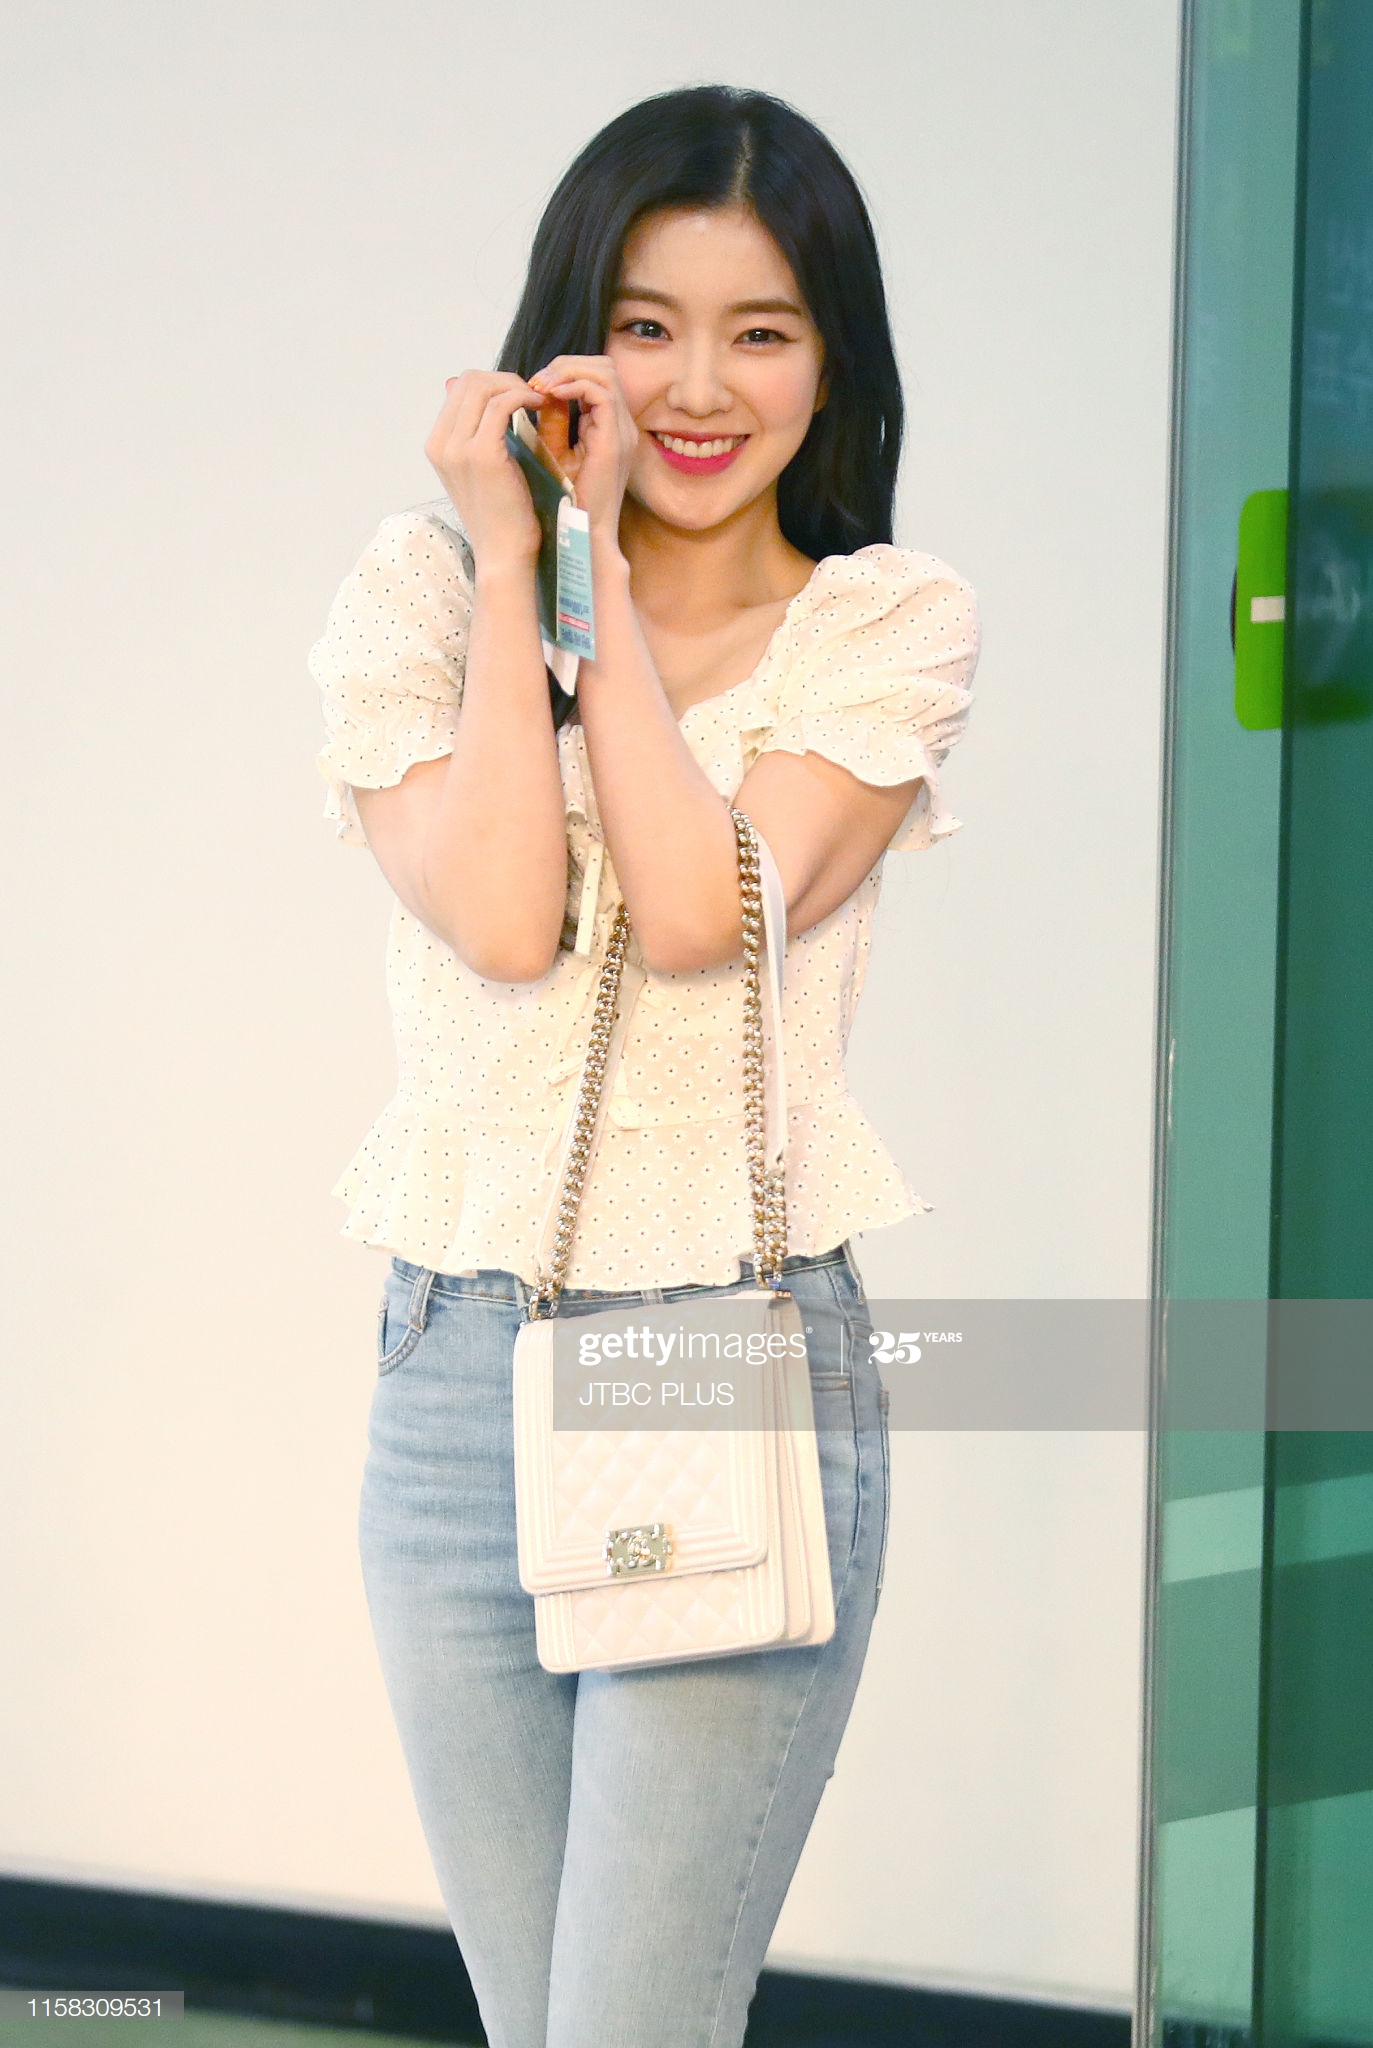 Irene đã chọn kiểu trang phục nhẹ nhàng với áo kiểu và quần jeans. (Ảnh: Getty Images)